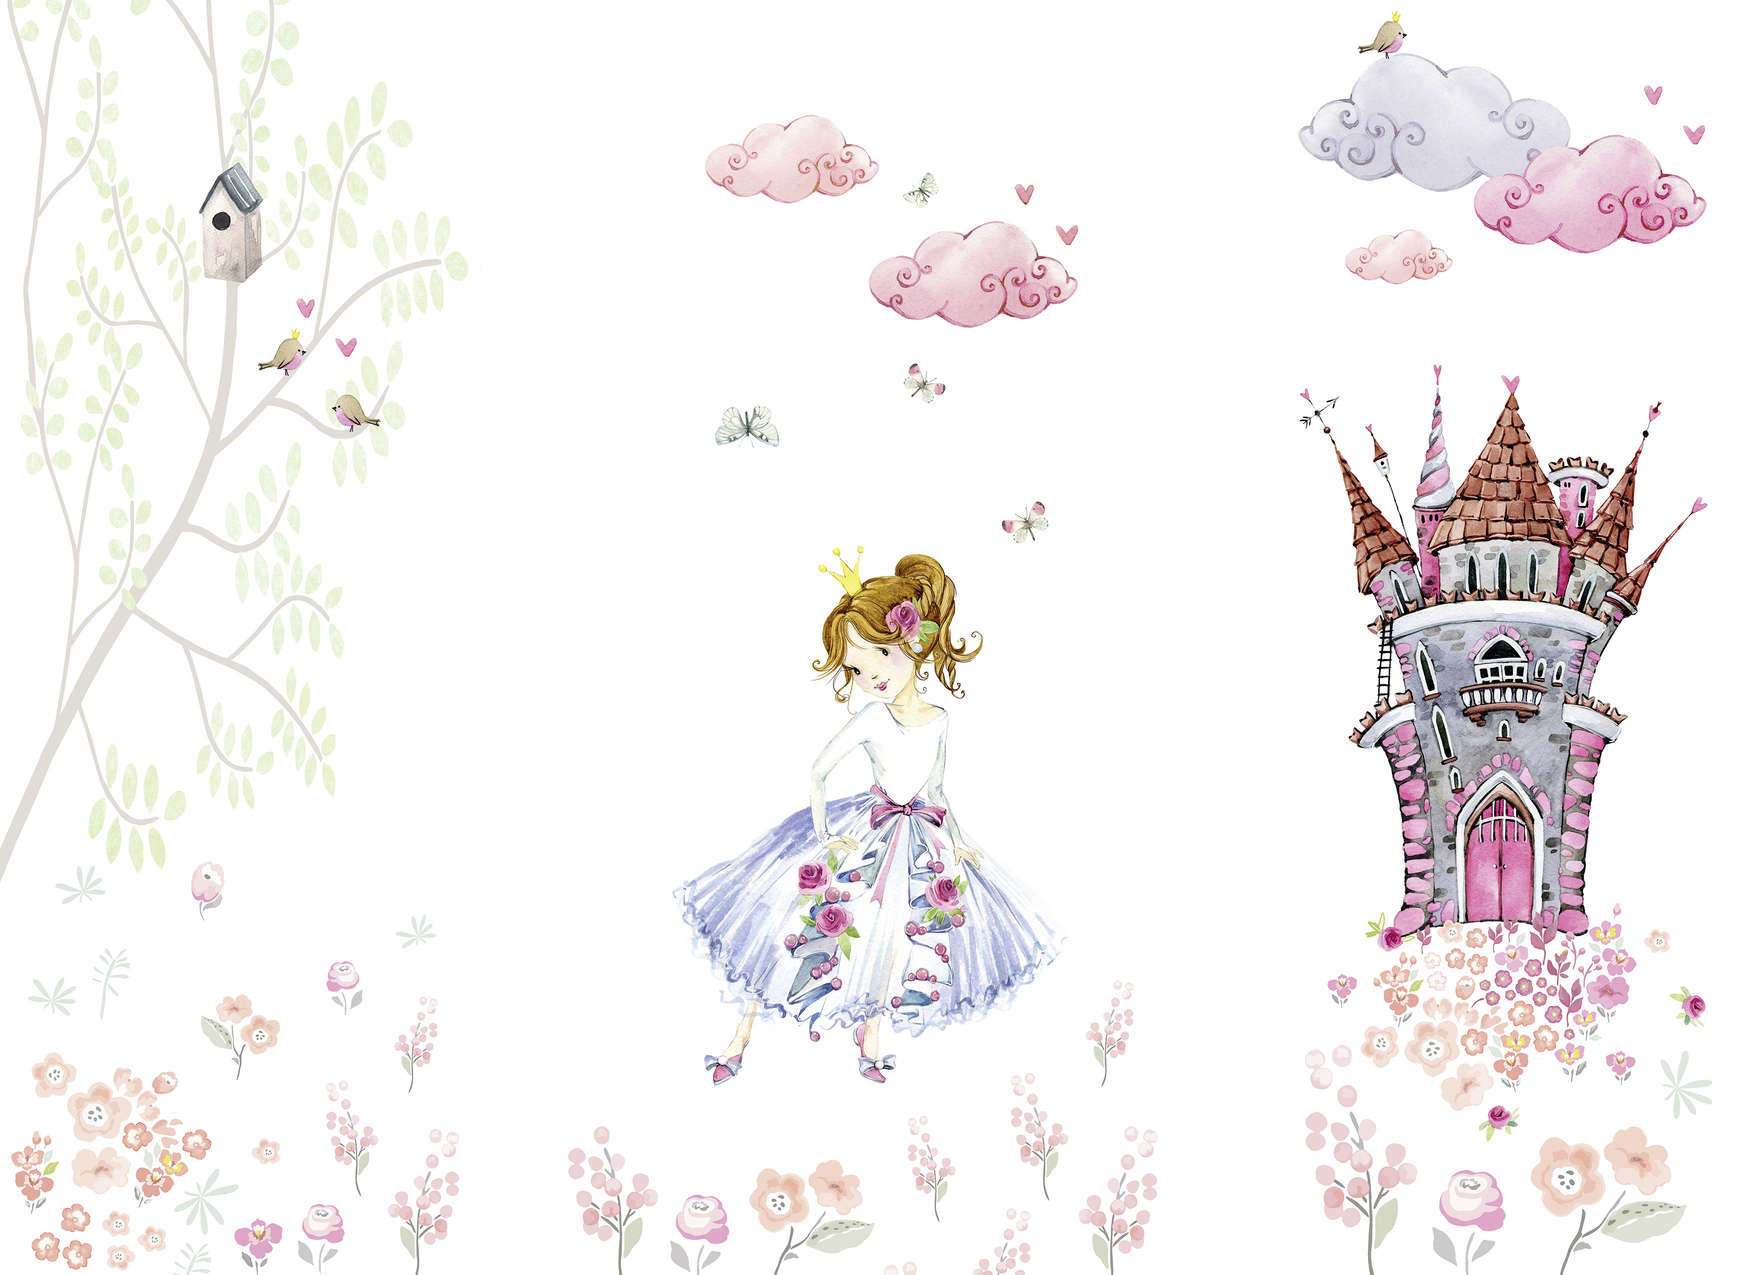             Carta da parati per la camera dei bambini Princess in the Castle Garden - Rosa, bianco, verde
        